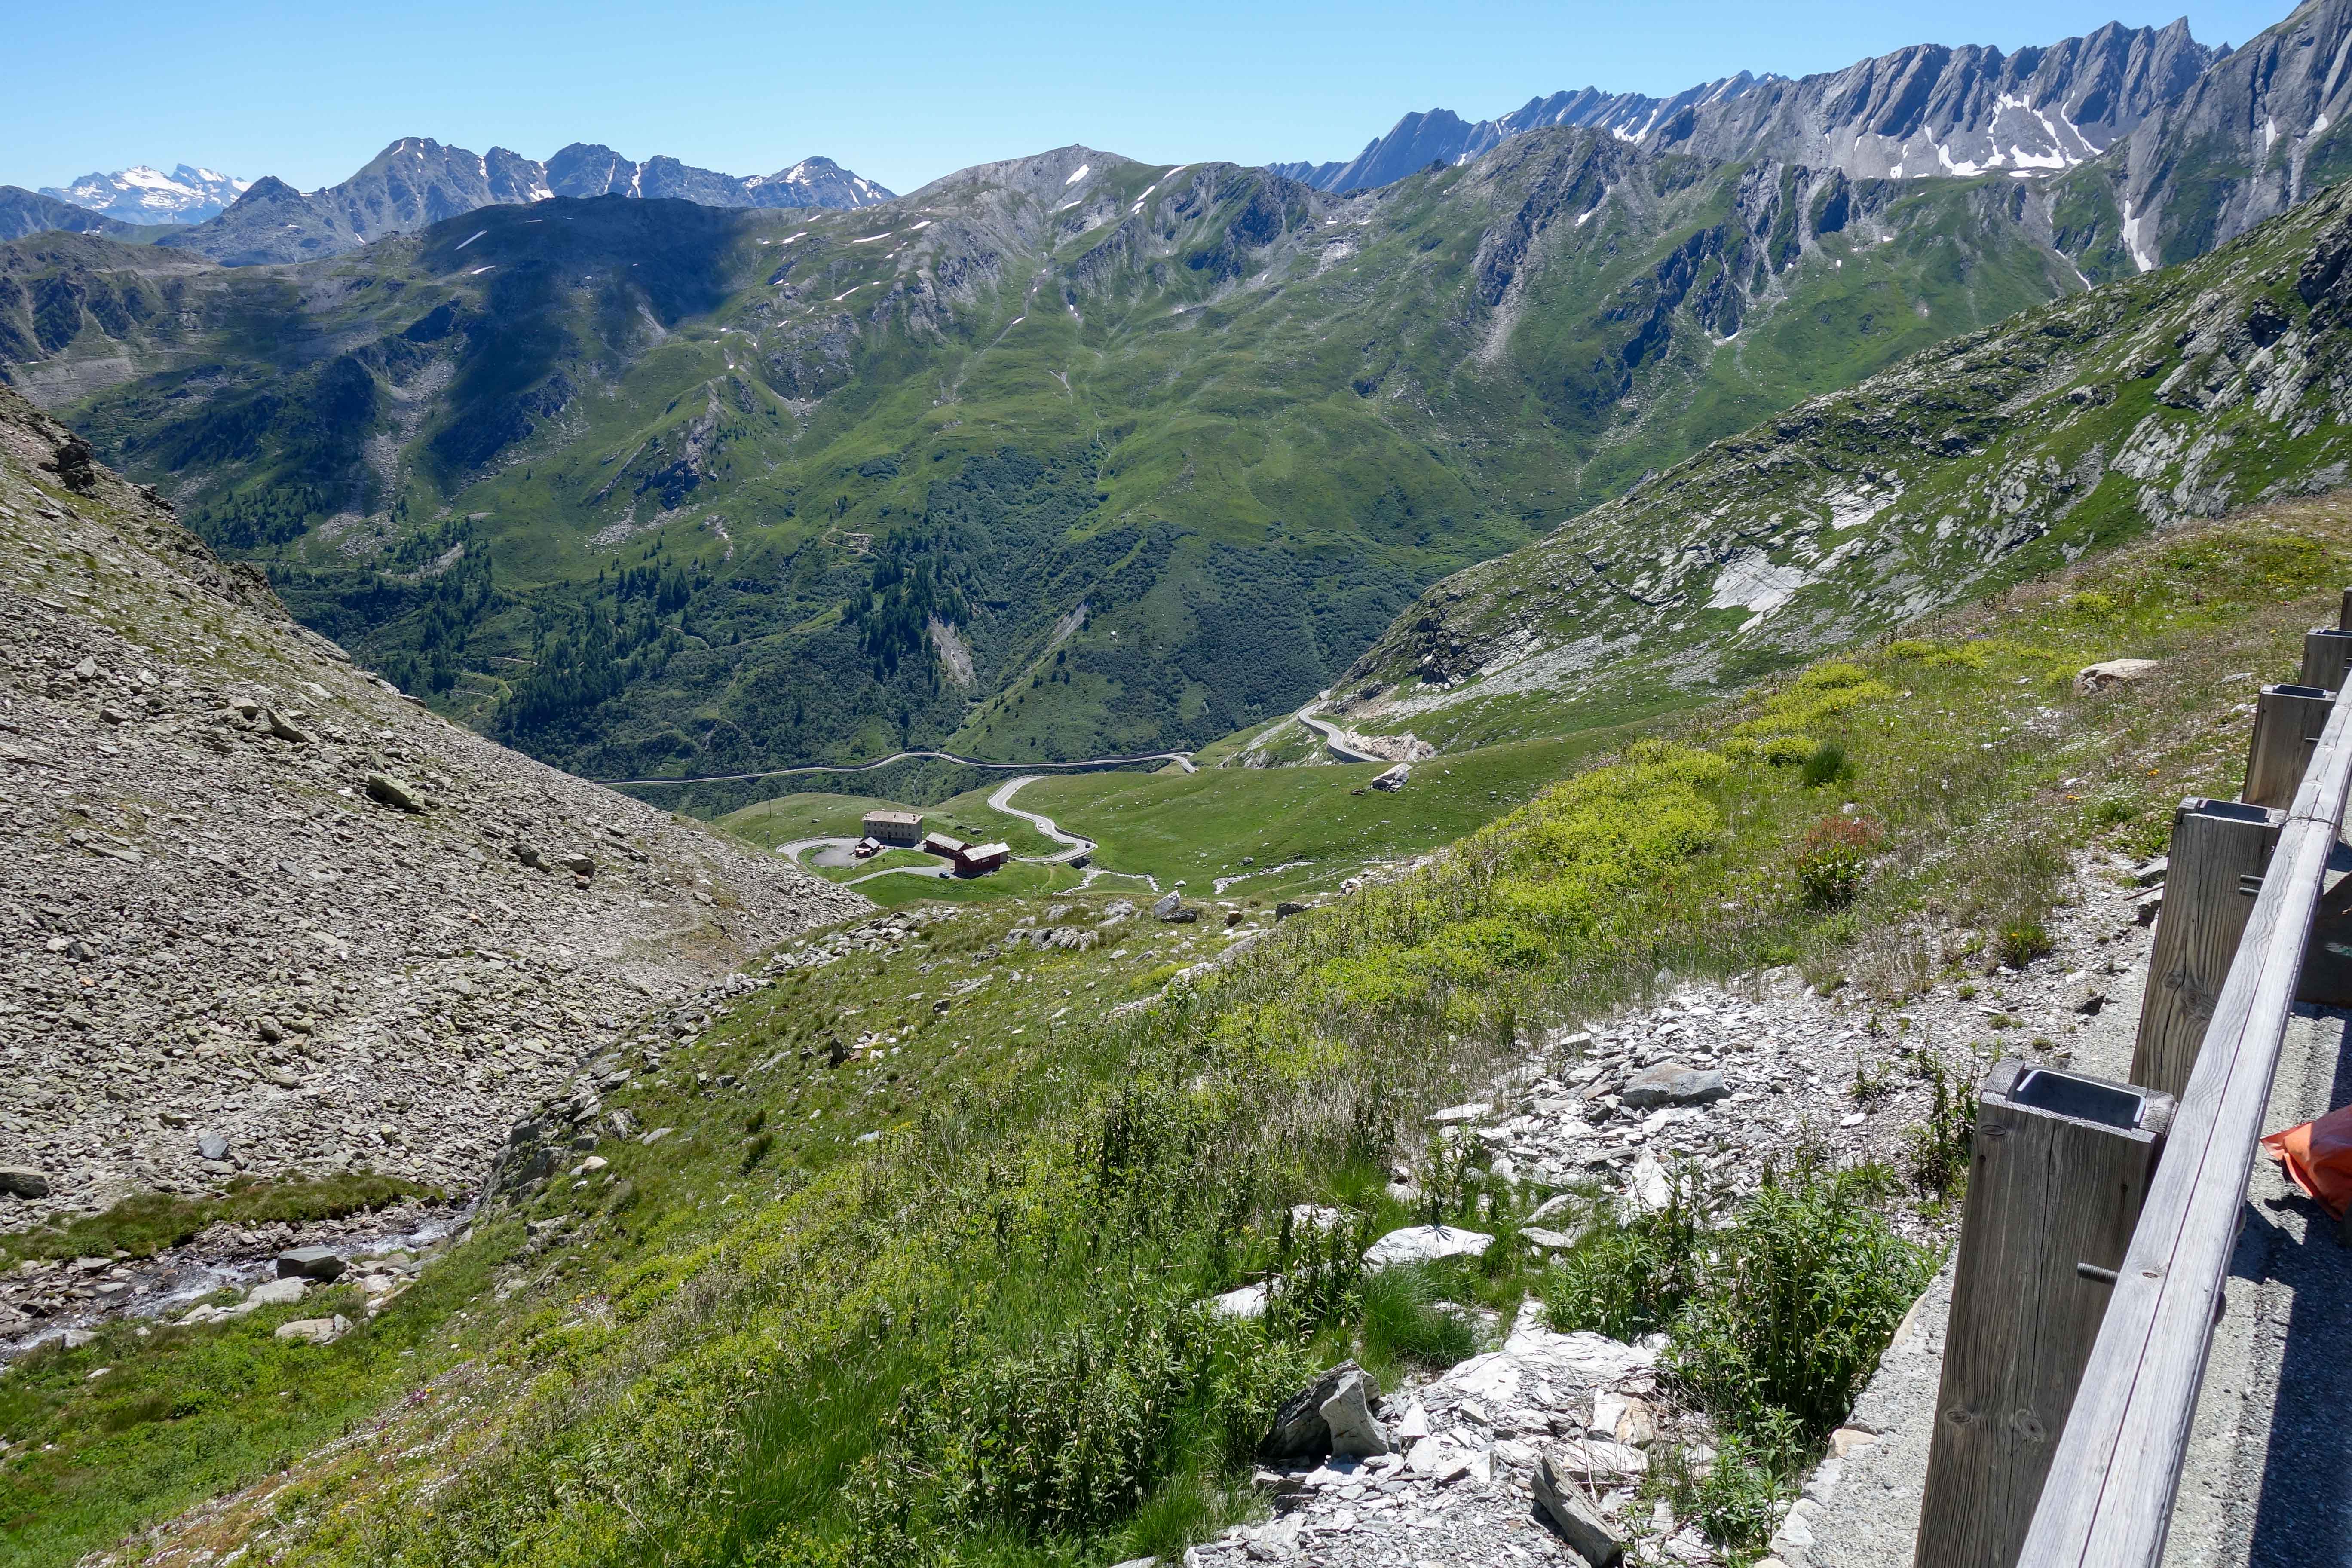 Vandring ner mot Aosta